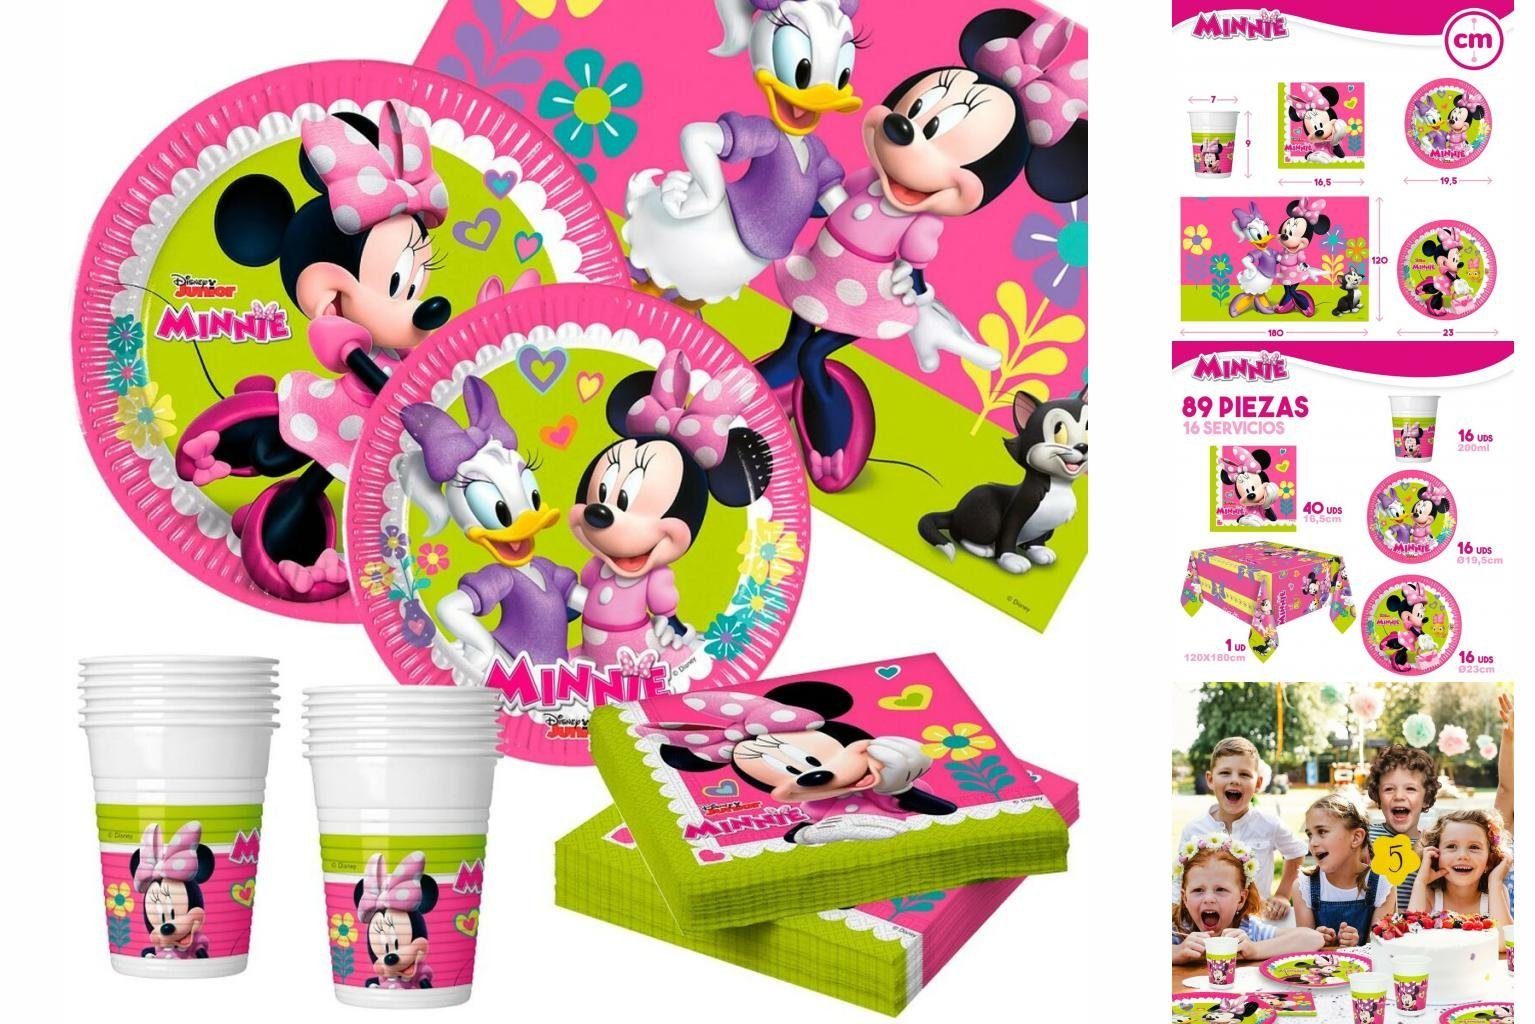 Disney Minnie Mouse Einweggeschirr-Set Set Partyartikel Minnie Mouse Happy Deluxe 89 Stücke 16